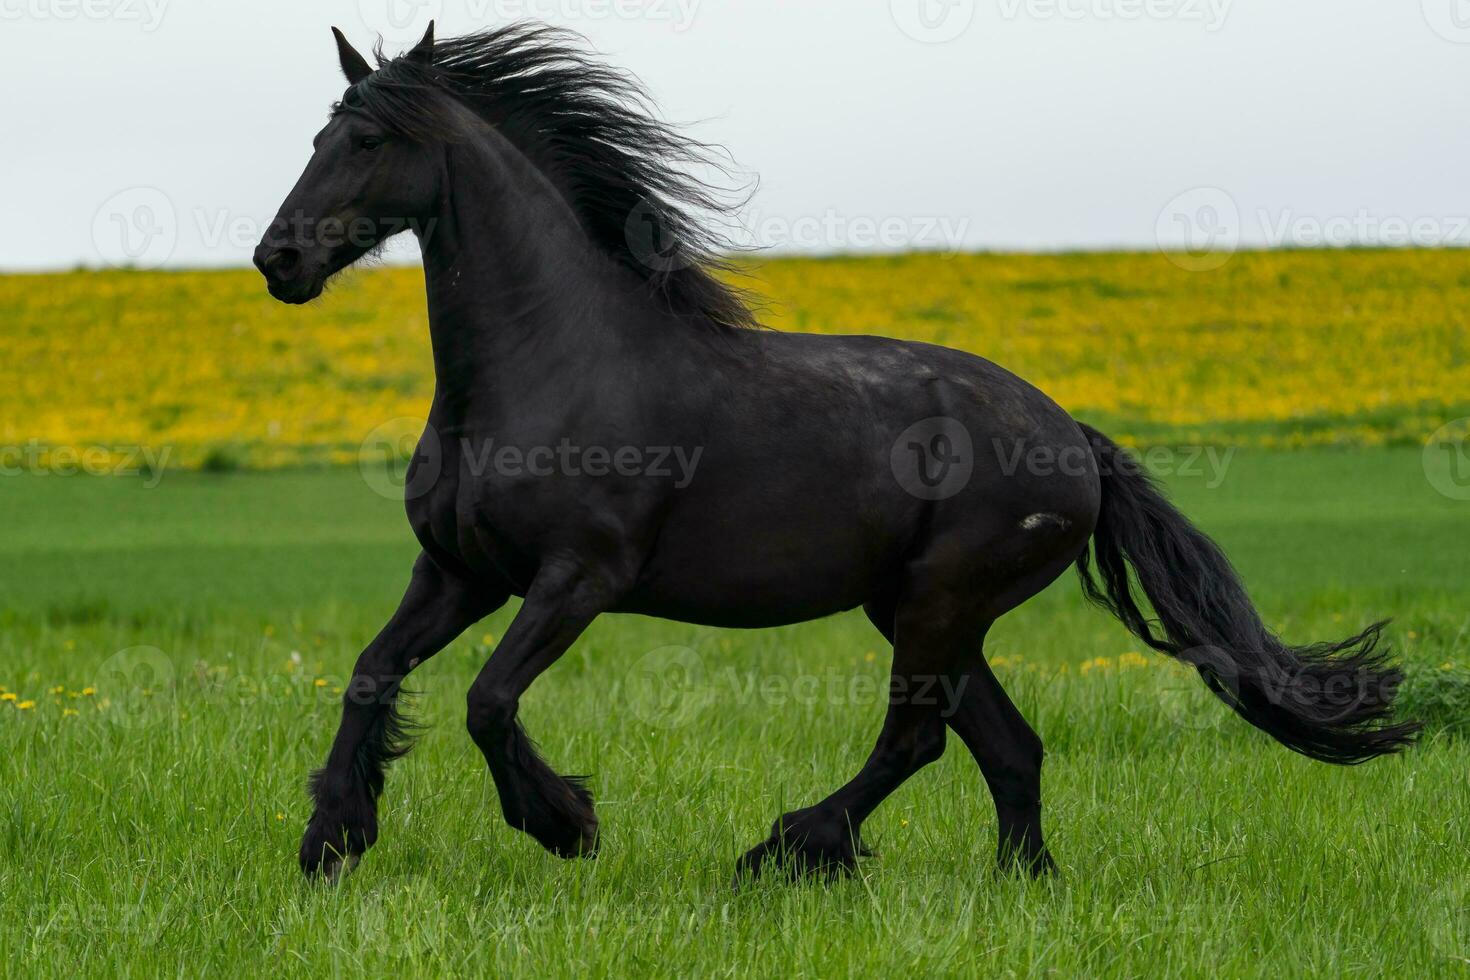 le cheval frison noir court au galop. photo